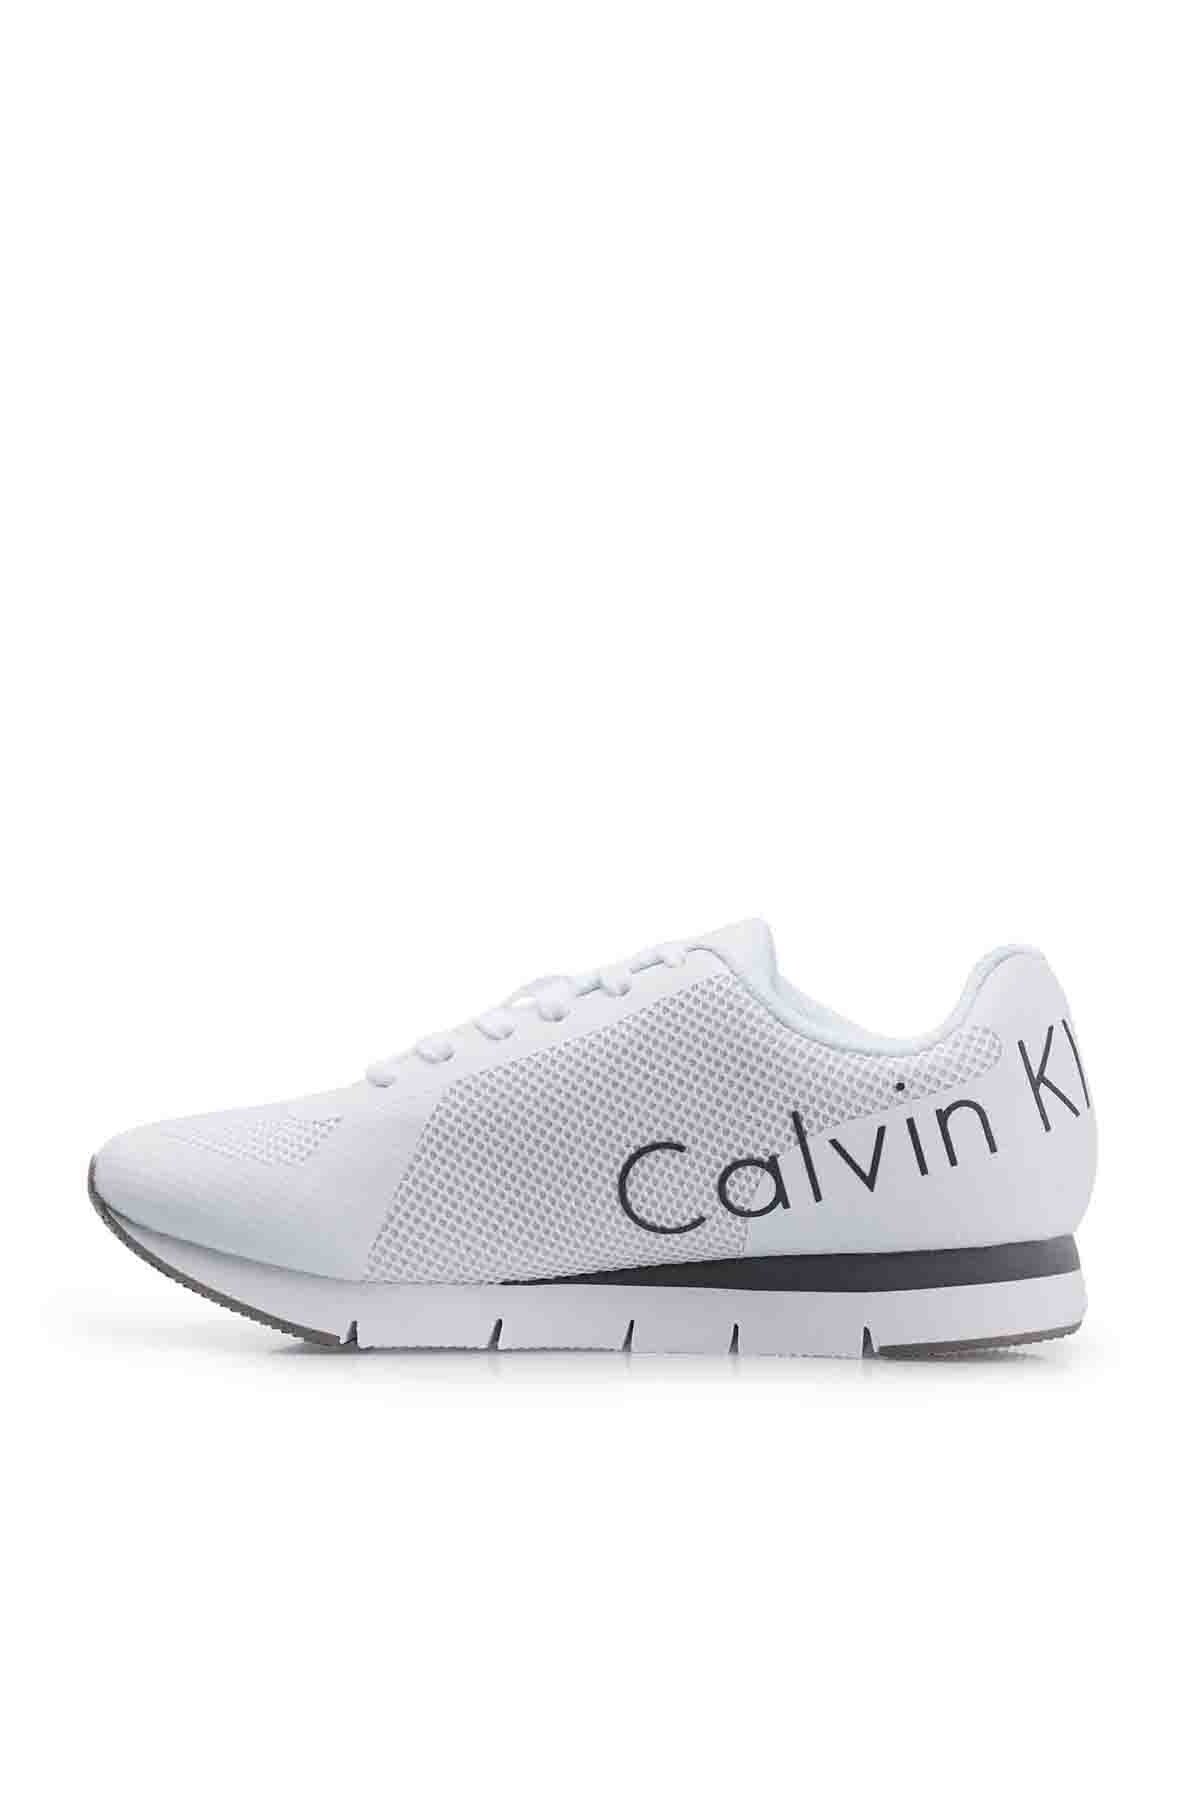 Calvin Klein Marka Logolu Erkek Ayakkabı 0000SE8526 WHT BEYAZ